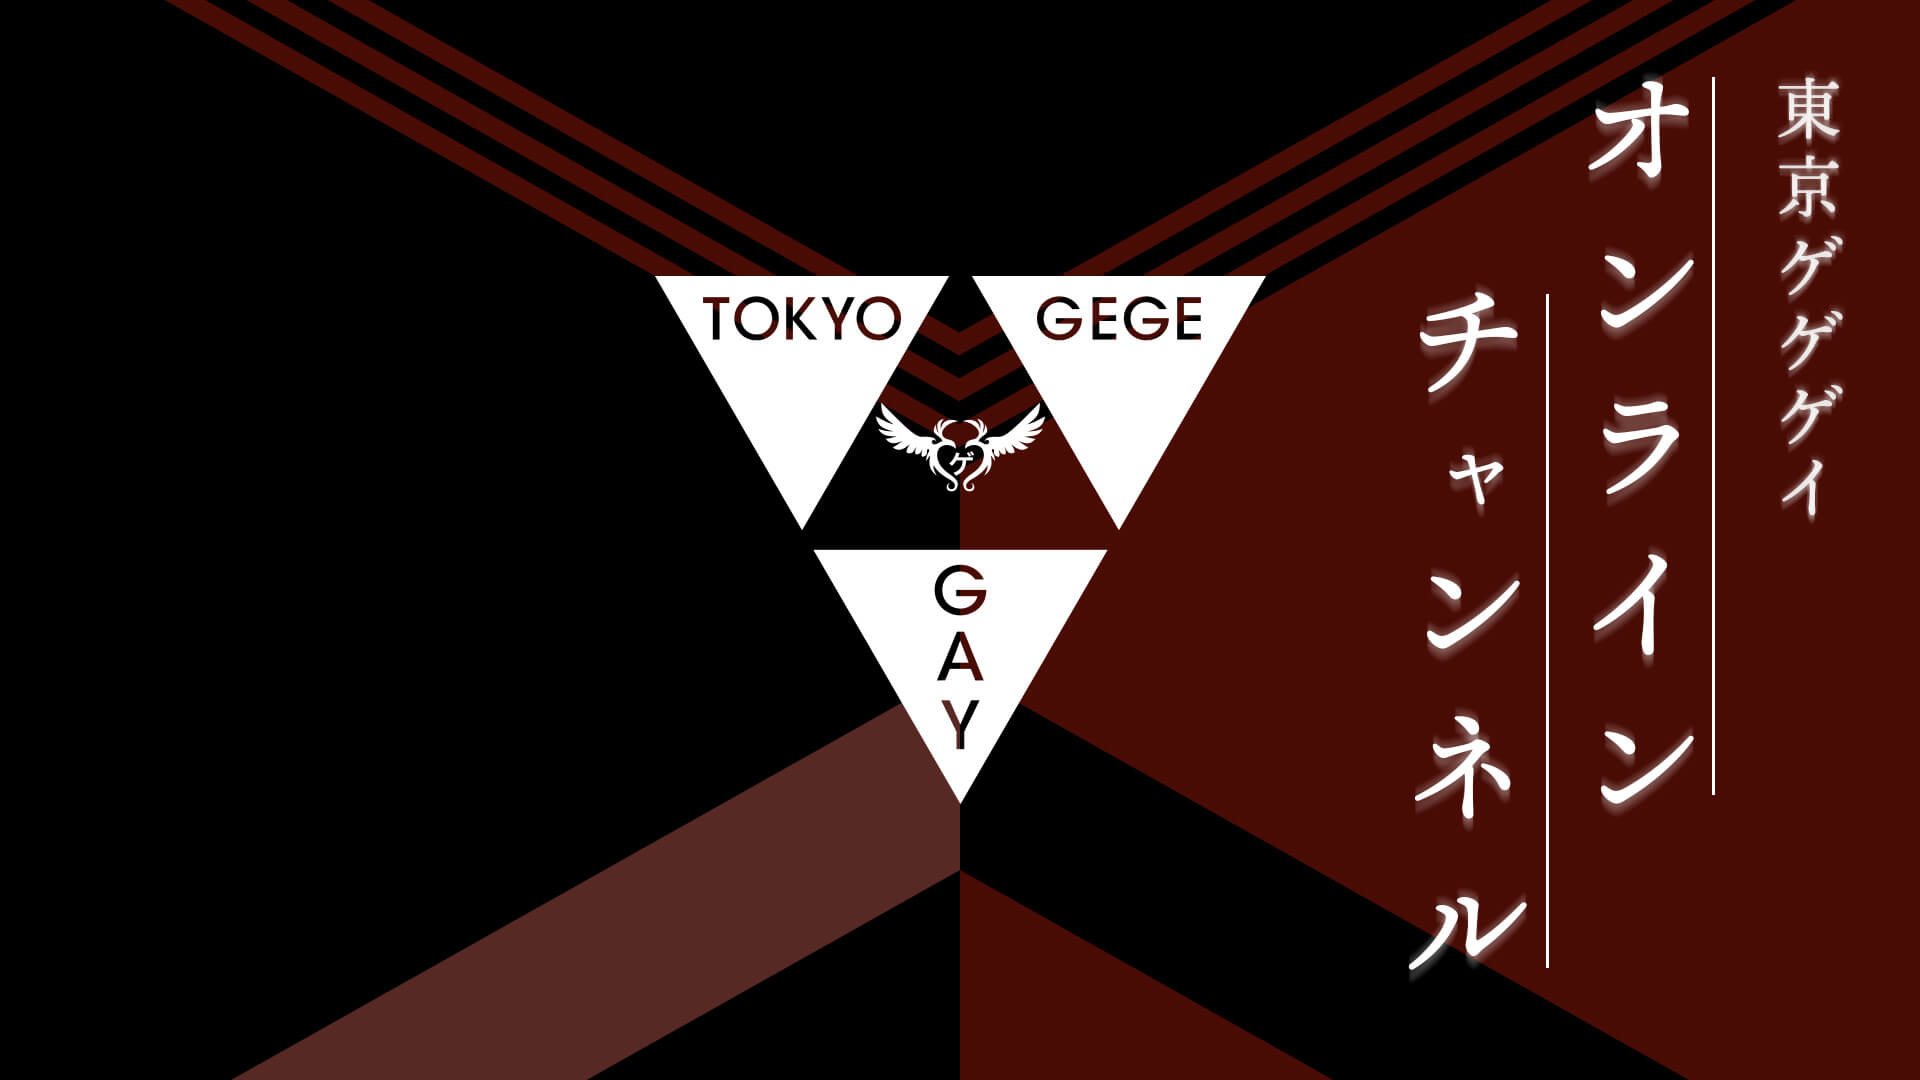 家中舞蹈課 東京ゲゲゲイオンラインチャンネル Tokyo Gegegay線上